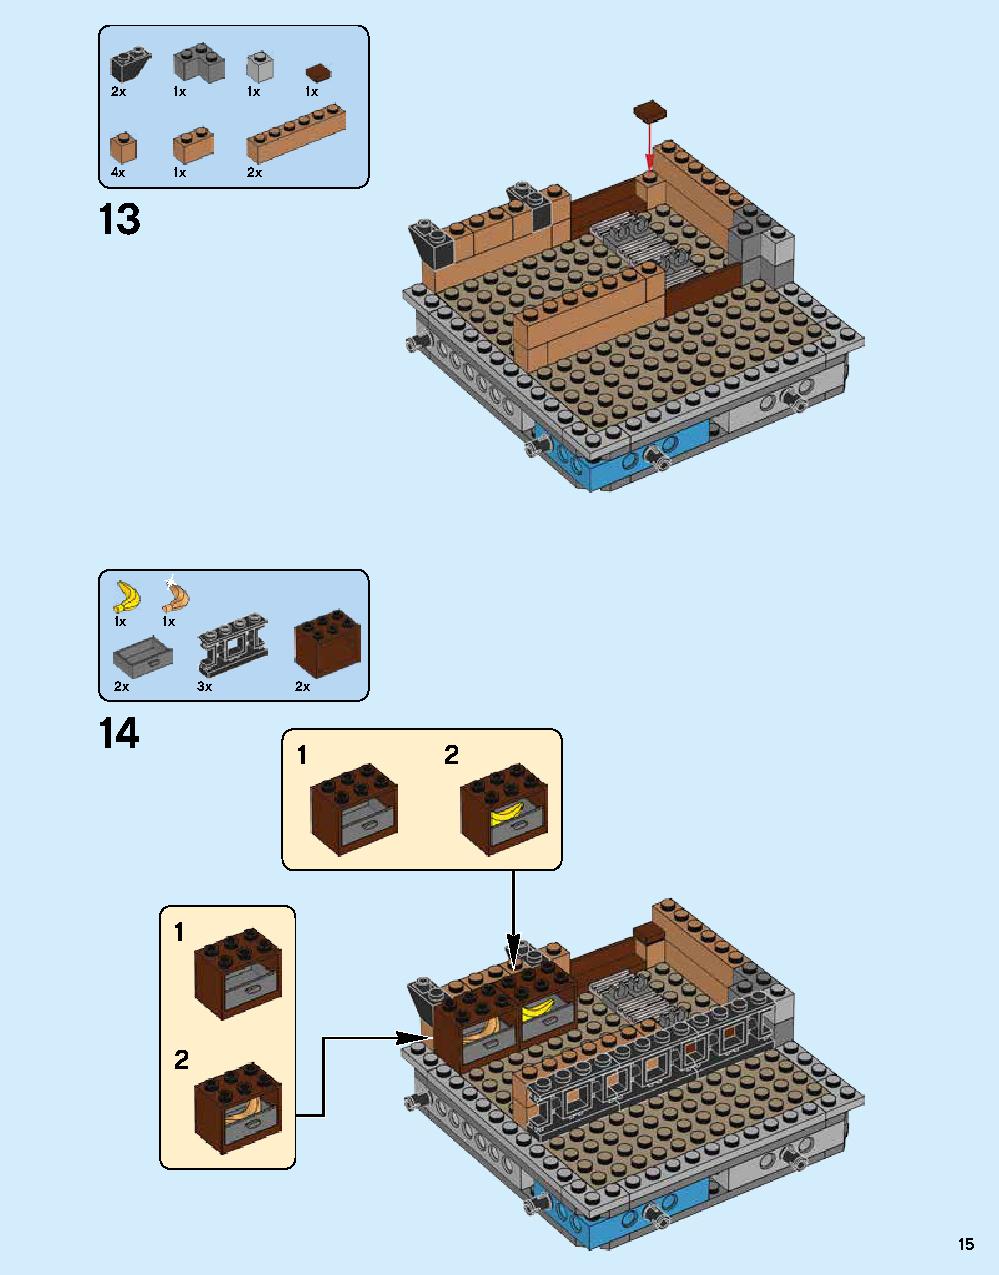 ニンジャゴー シティ 70620 レゴの商品情報 レゴの説明書・組立方法 15 page